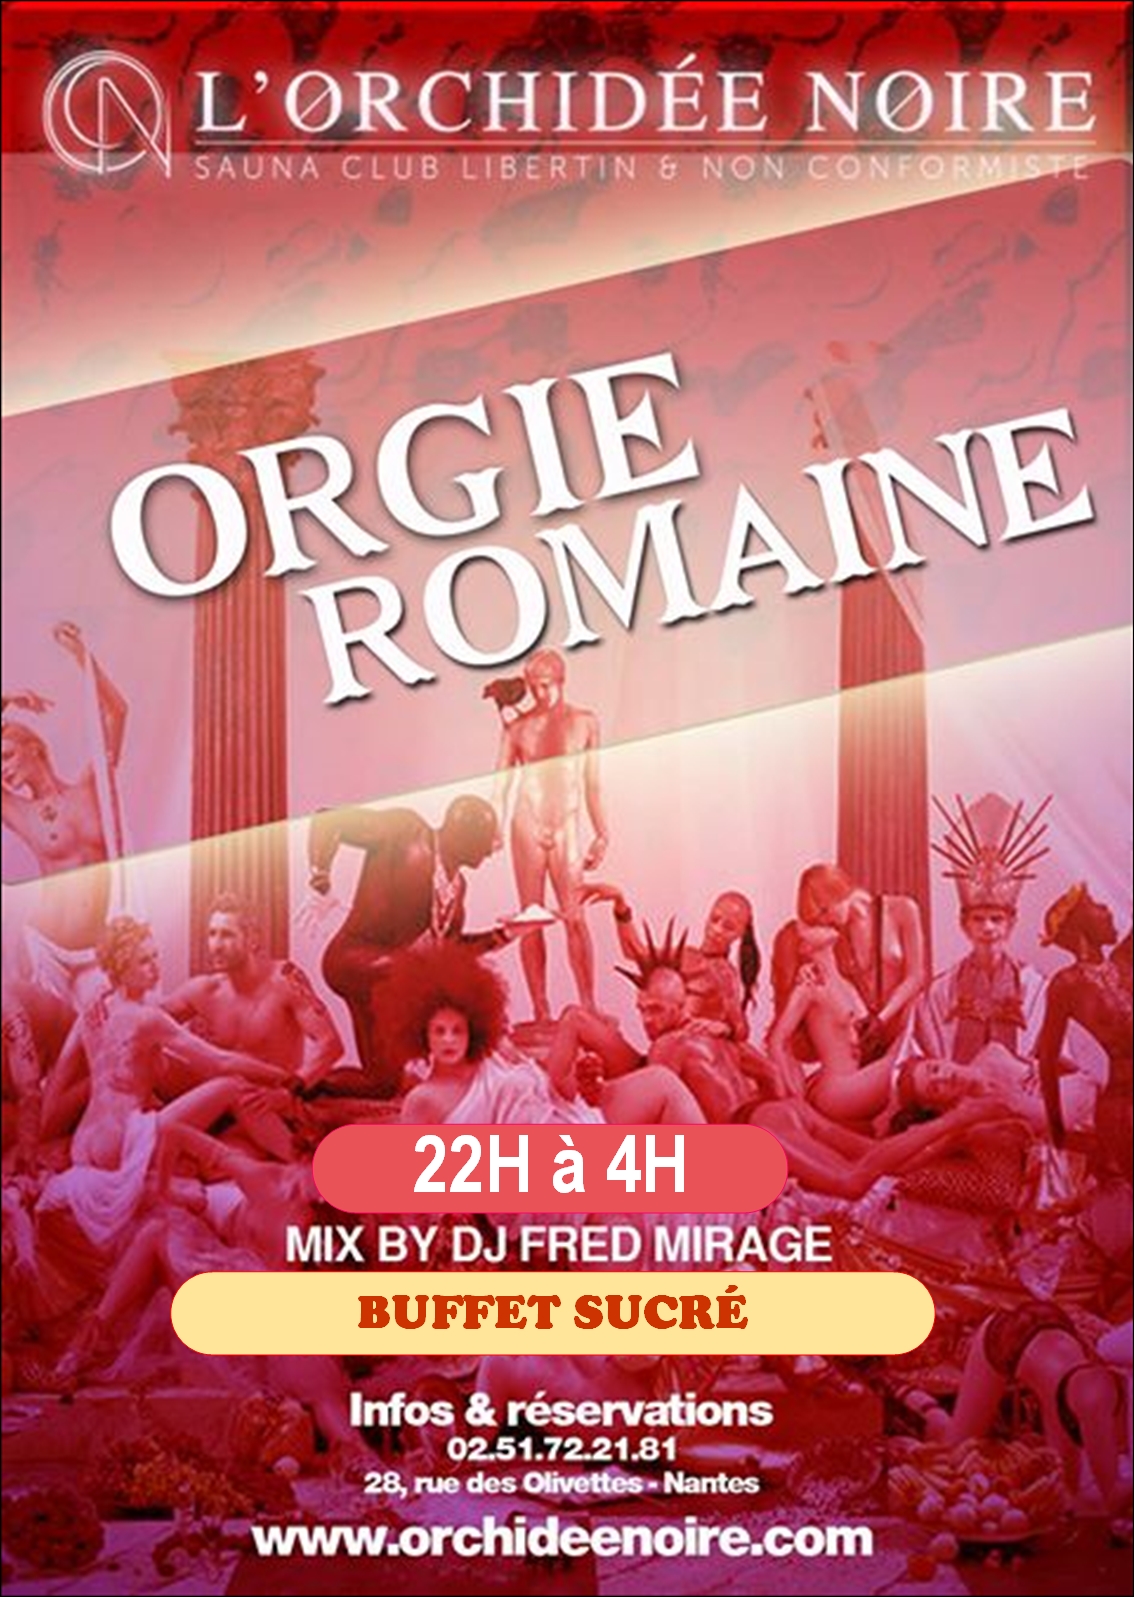 Orgie romaine